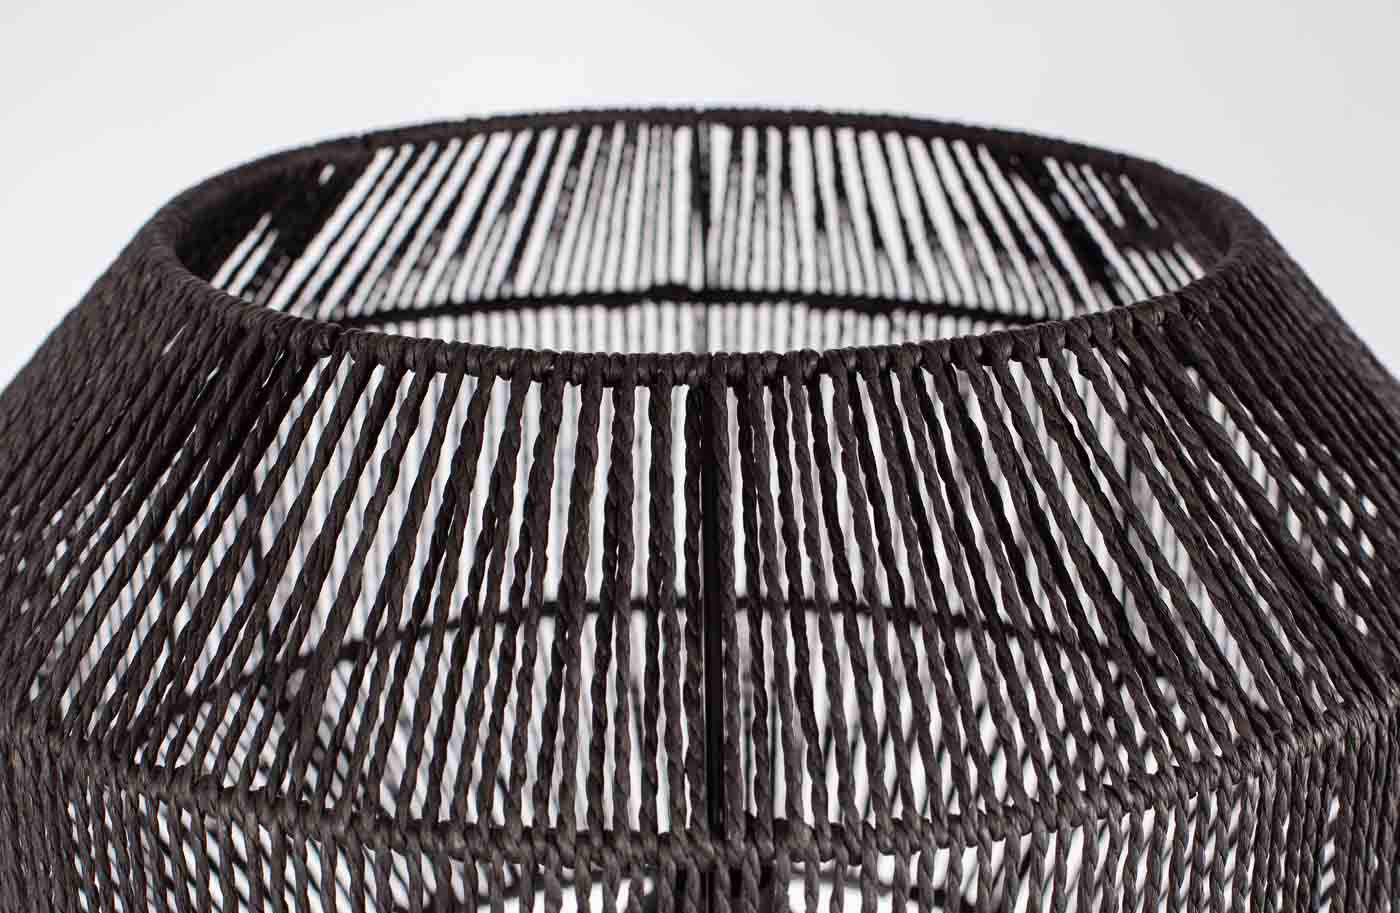 Traumhafte Stehleuchte mit einem filigranen Dreifuß aus Metall, der Leuchtschirm aus natürlicher Jute in Schwarz gefärbt unterstreicht das zeitlose Design